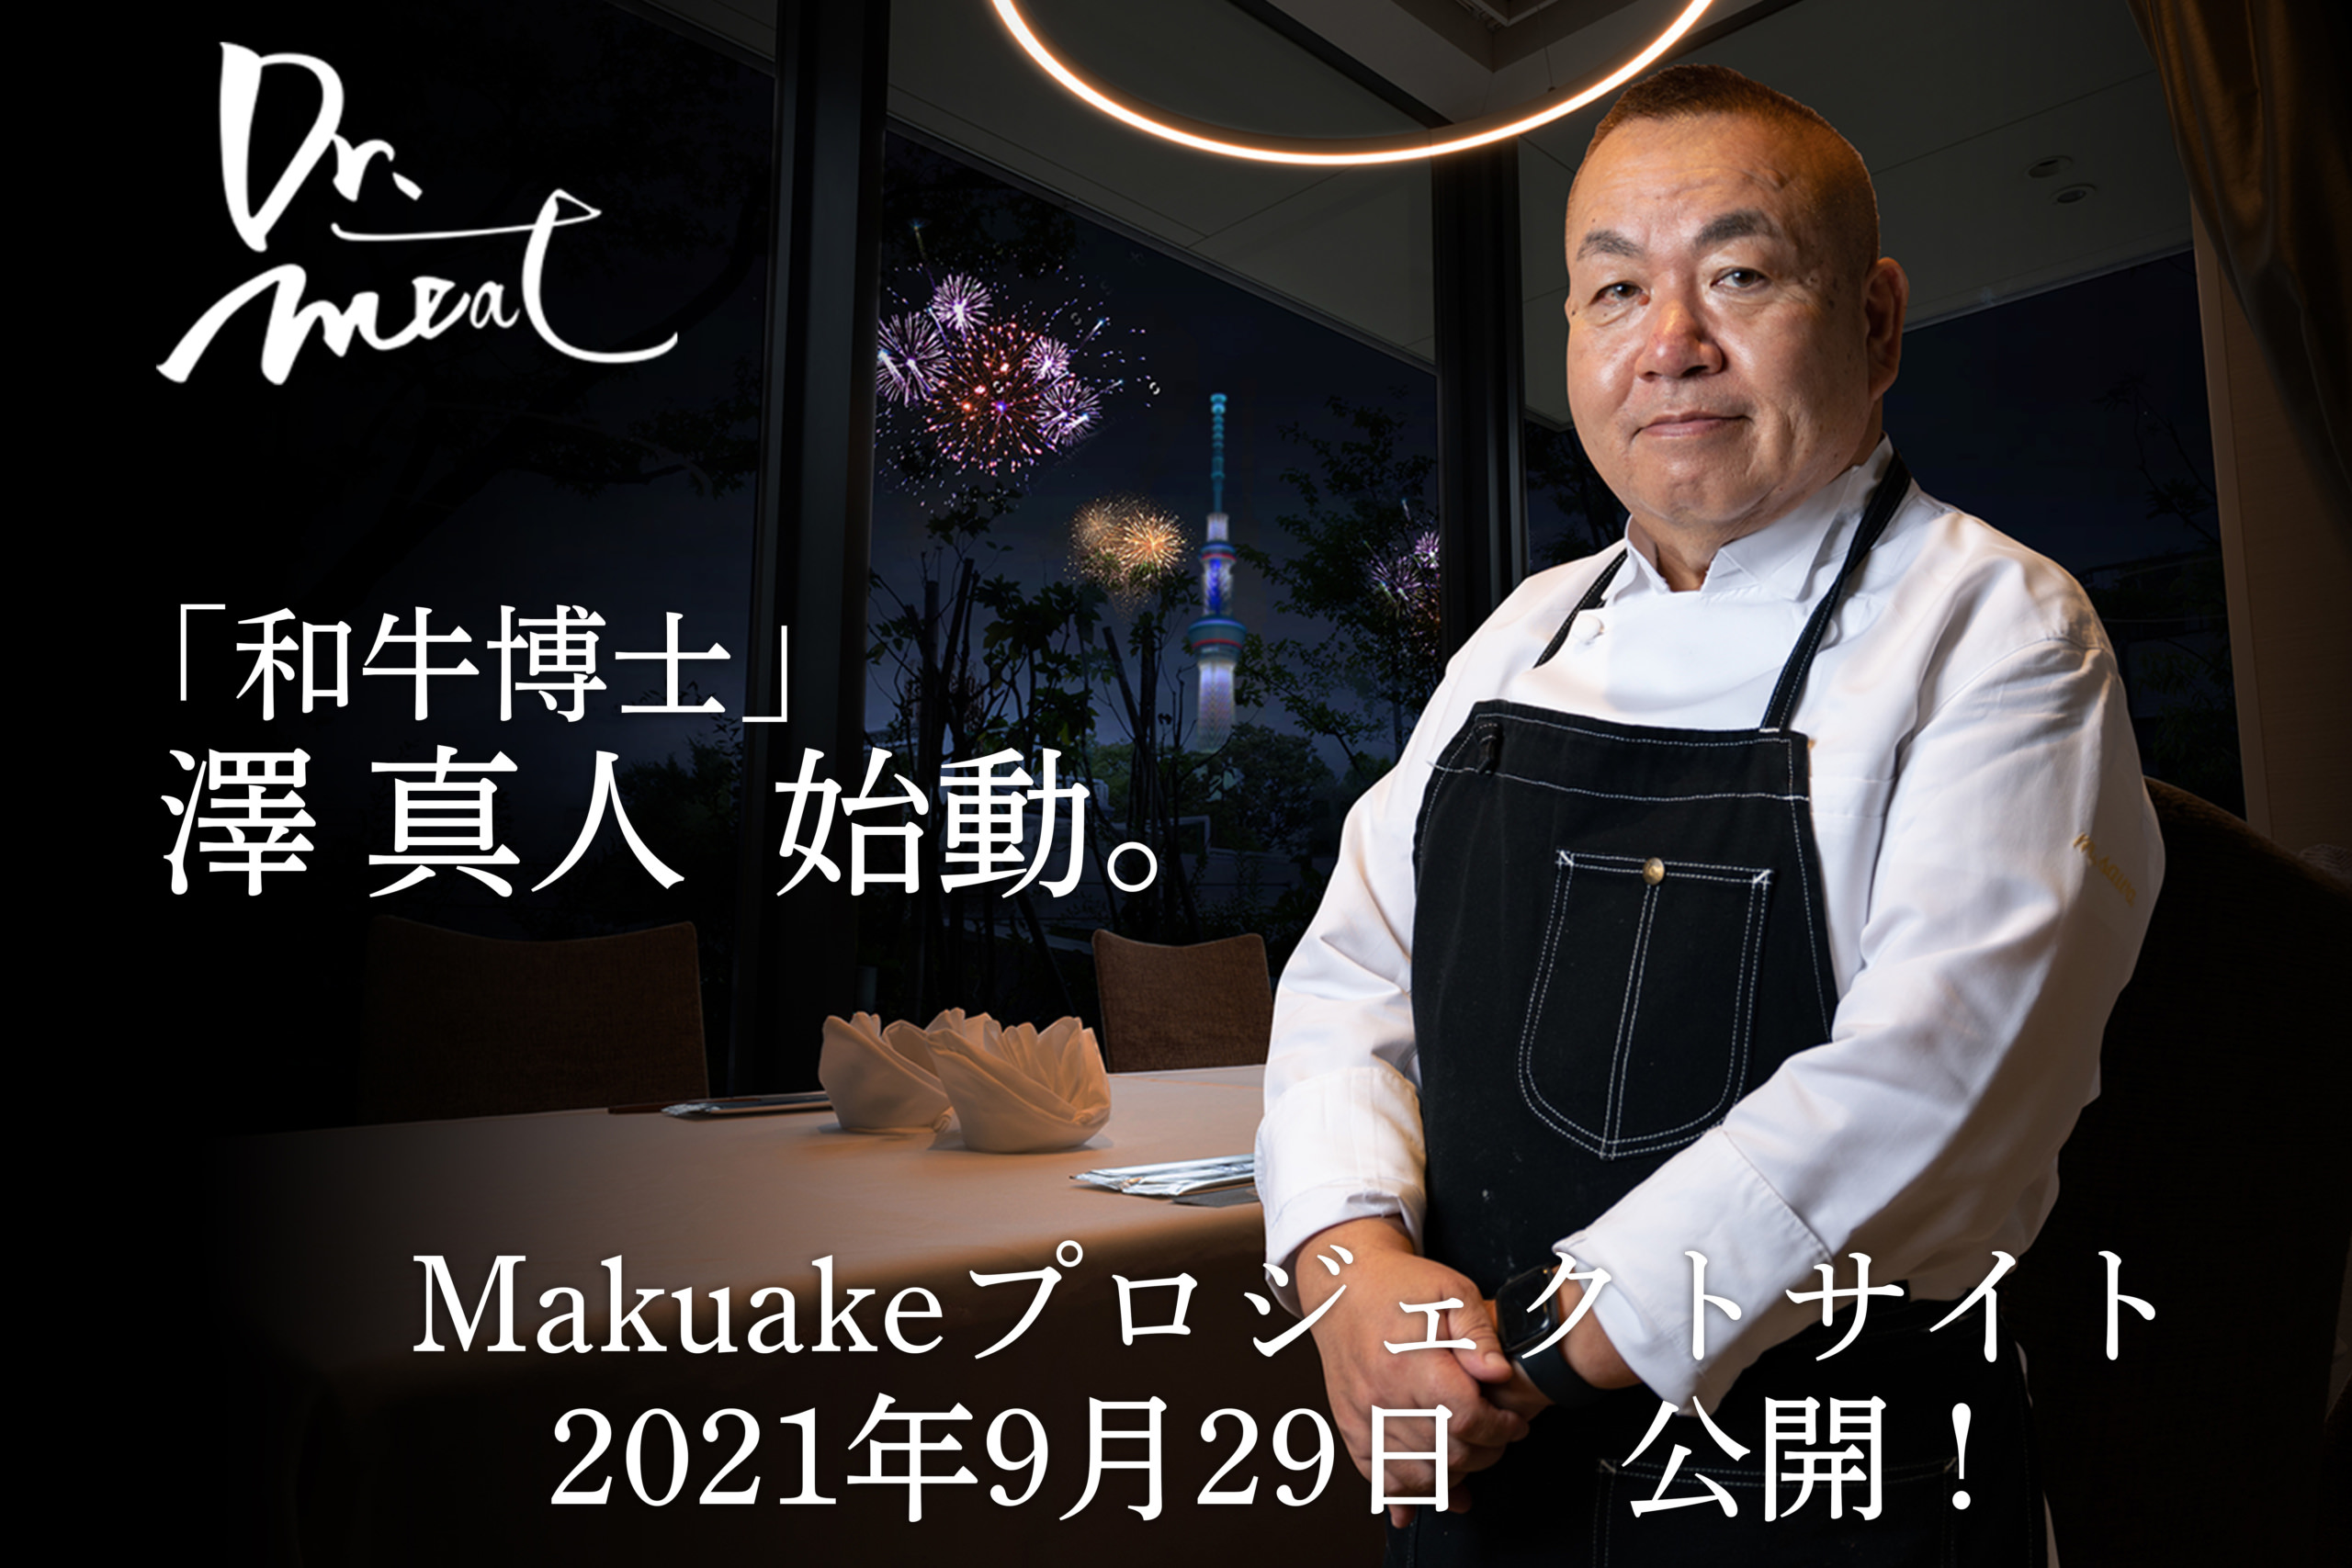 「和牛博士」澤 真人の新たなチャレンジ！
Makuakeプロジェクト始動！